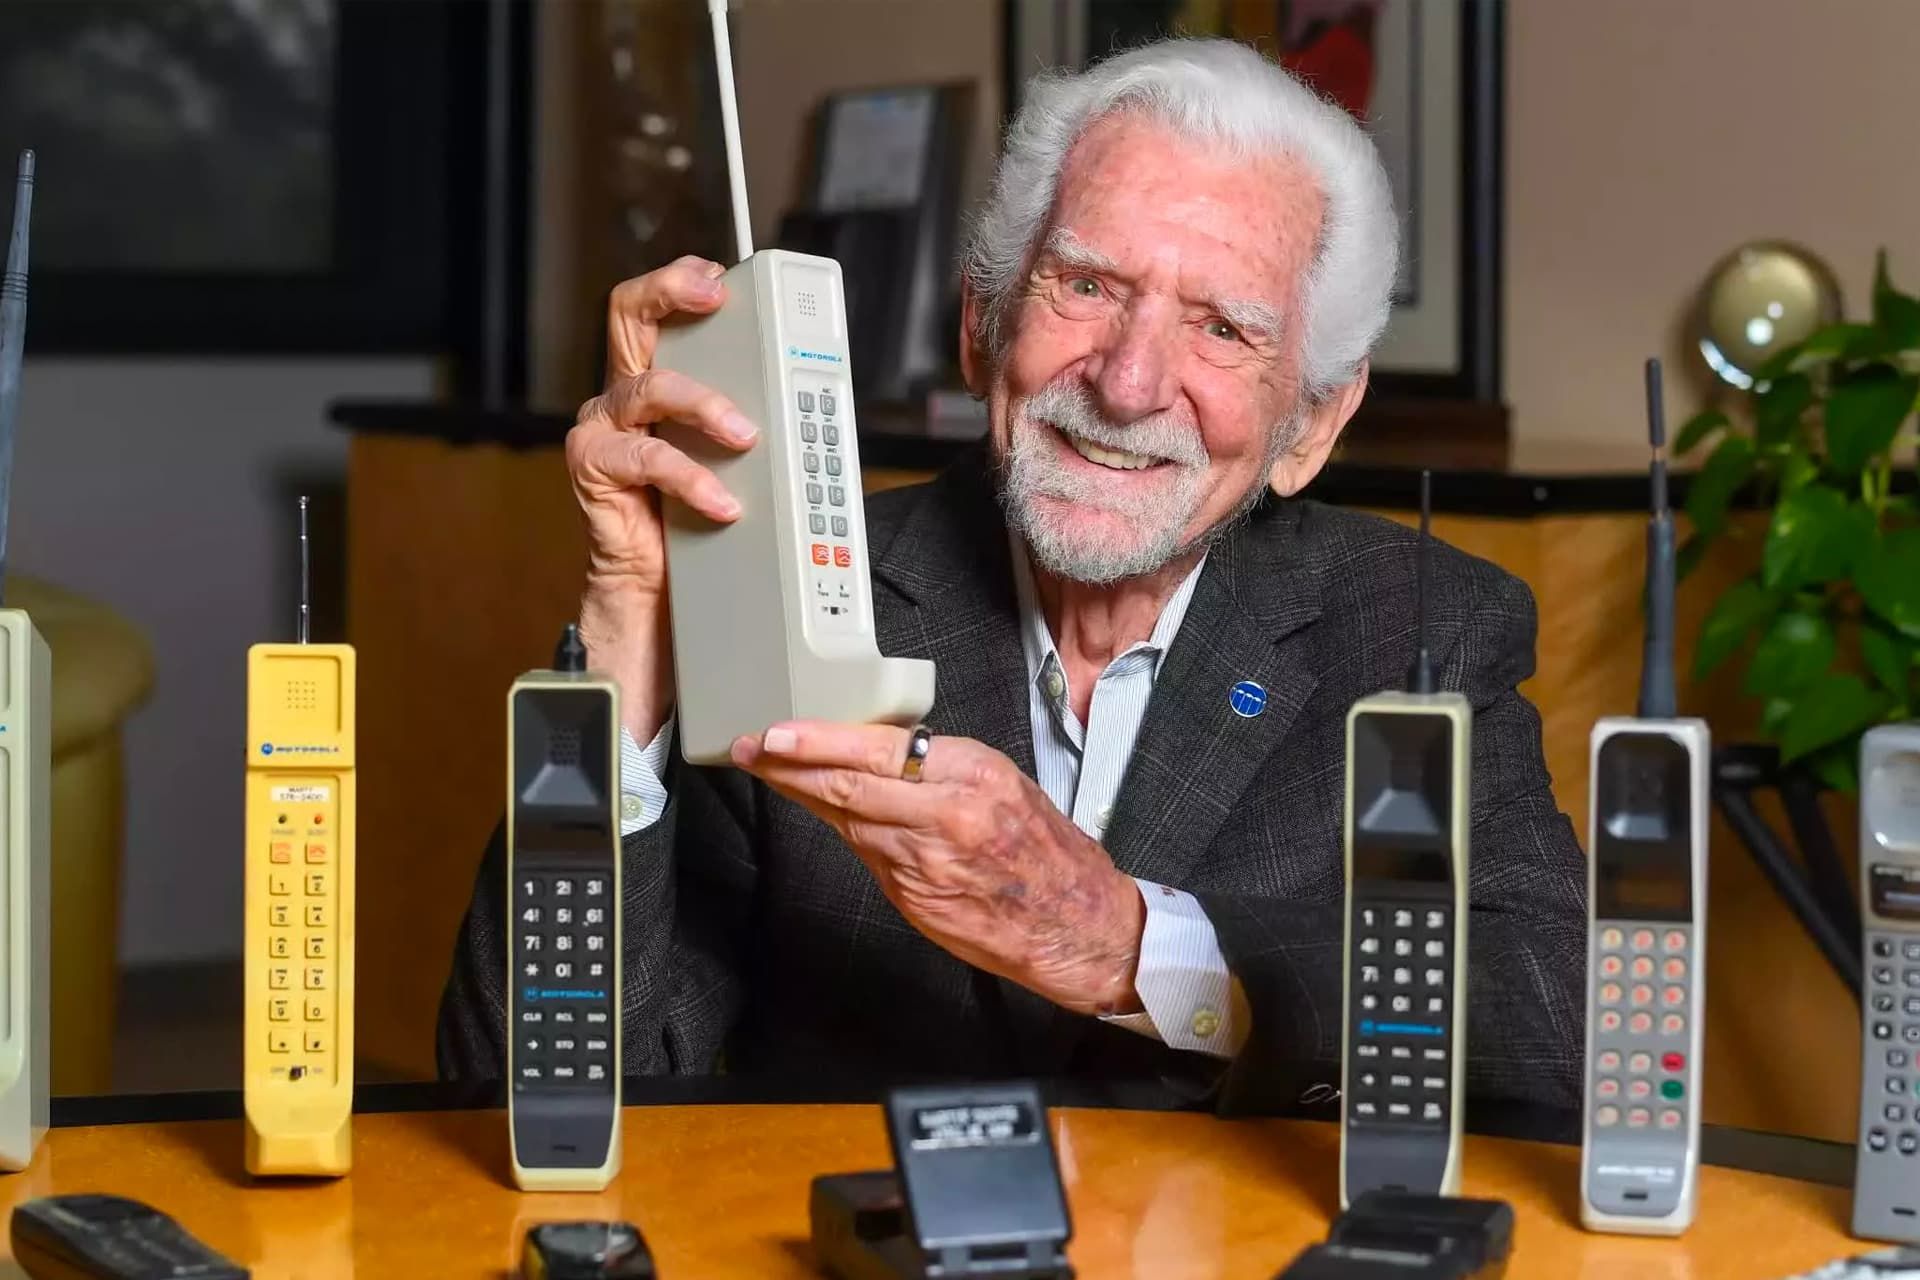 لبخند مارتین کوپر / Martin Cooper پدر تلفن همراه با گوشی قدیمی